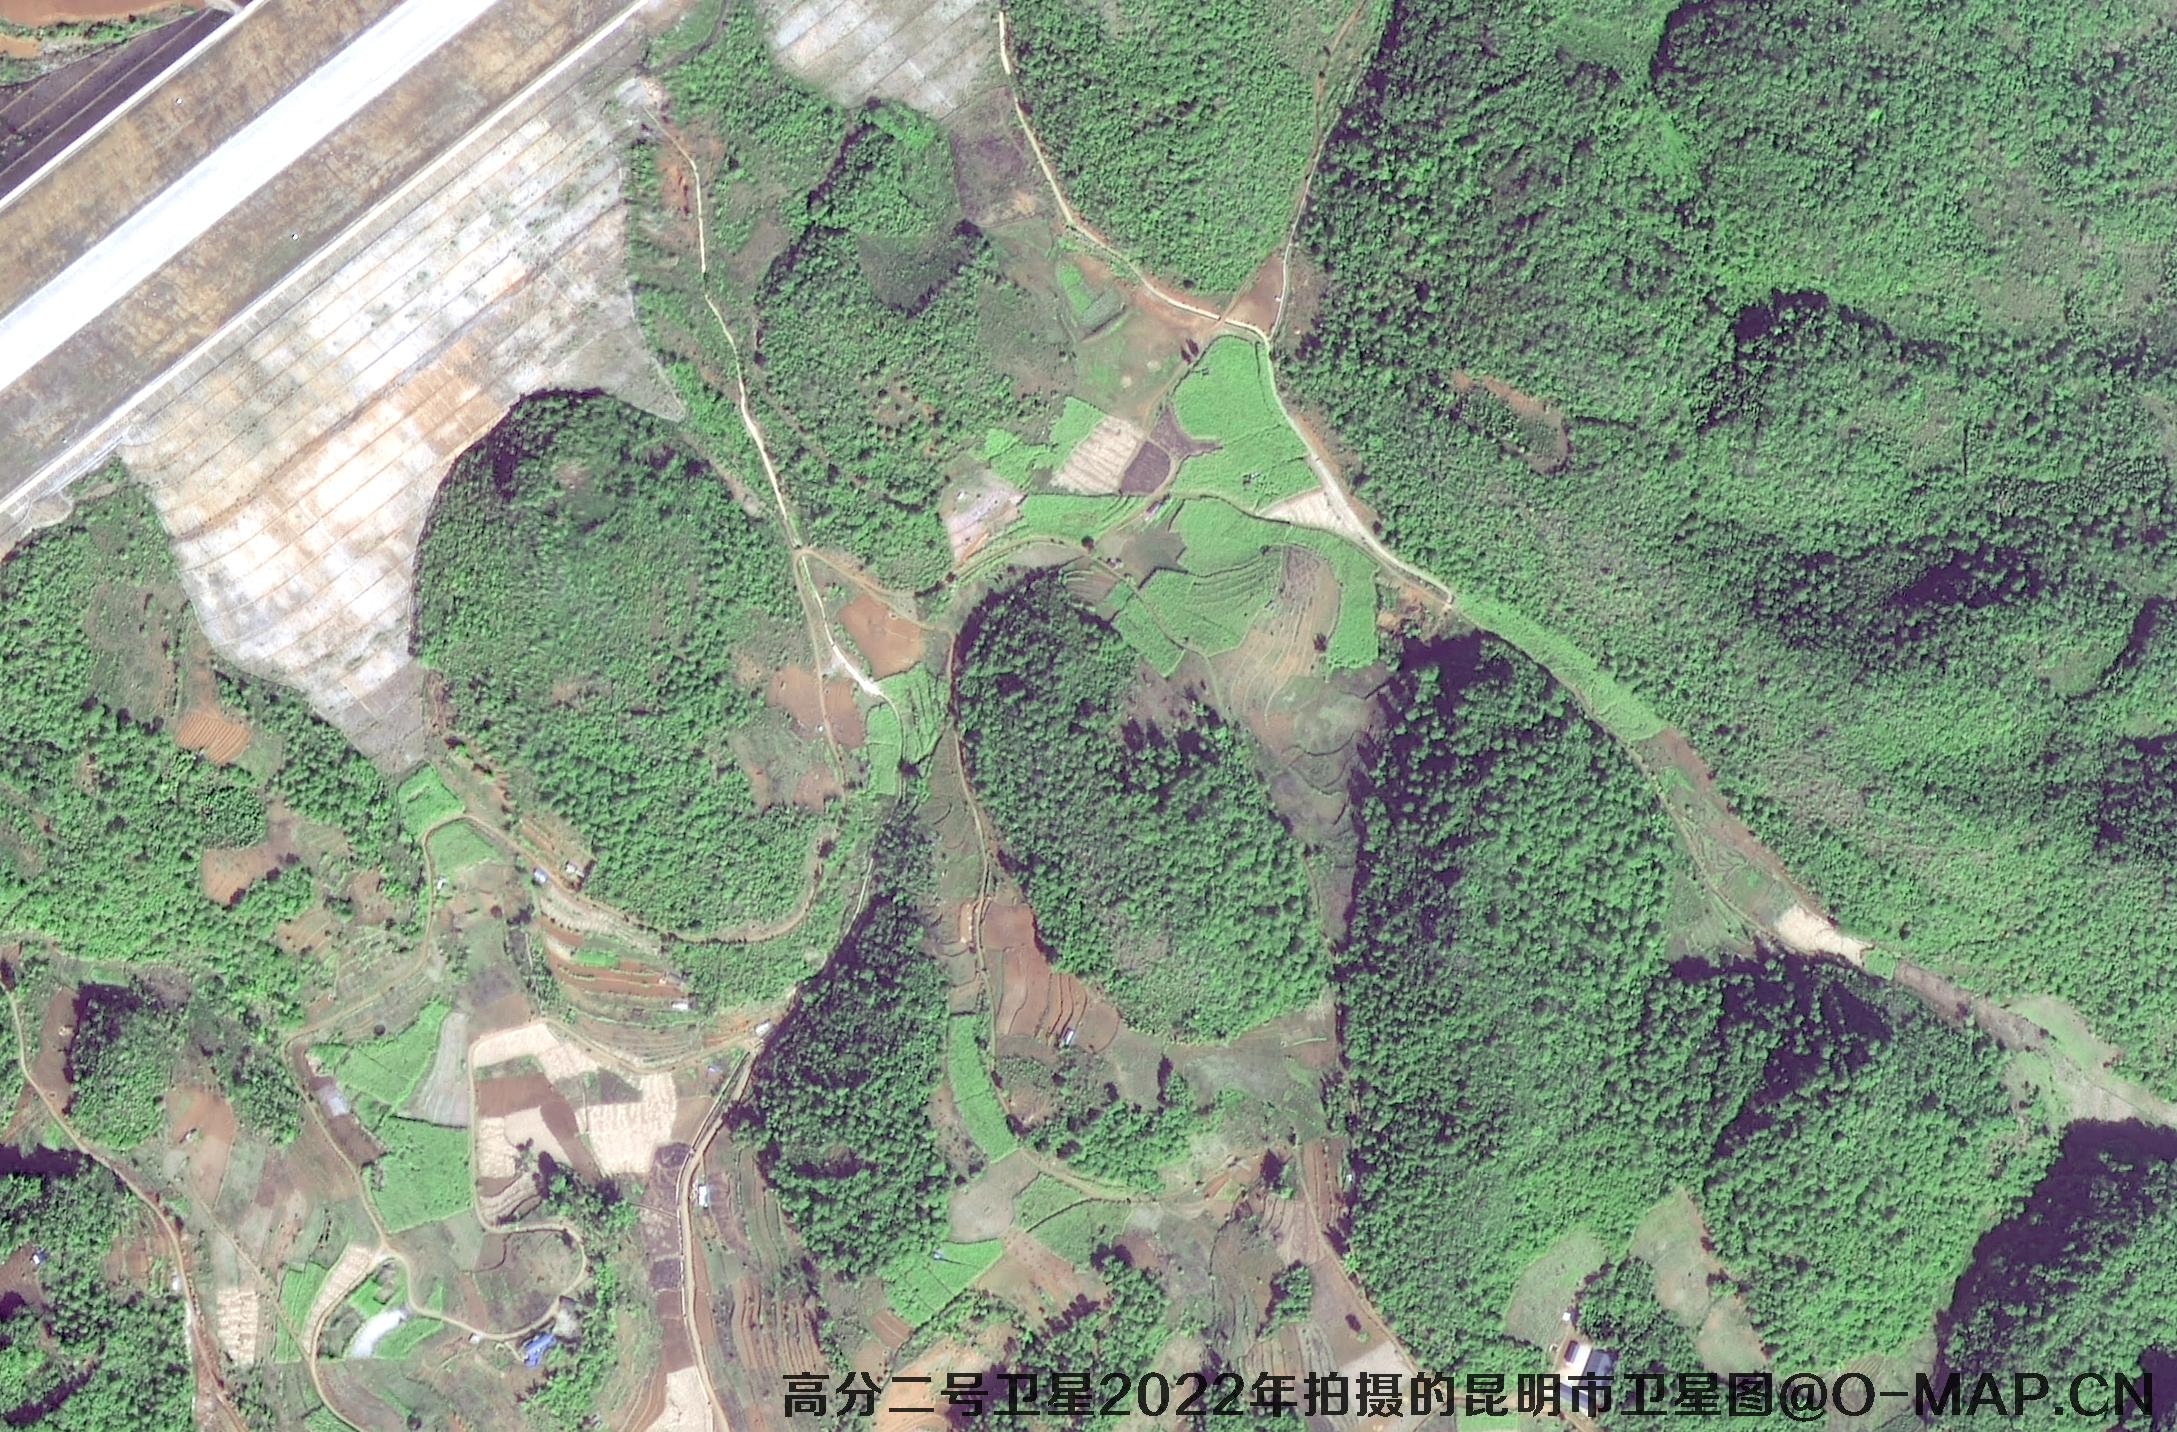 高分二号卫星2022年拍摄的云南省昆明市某保护区